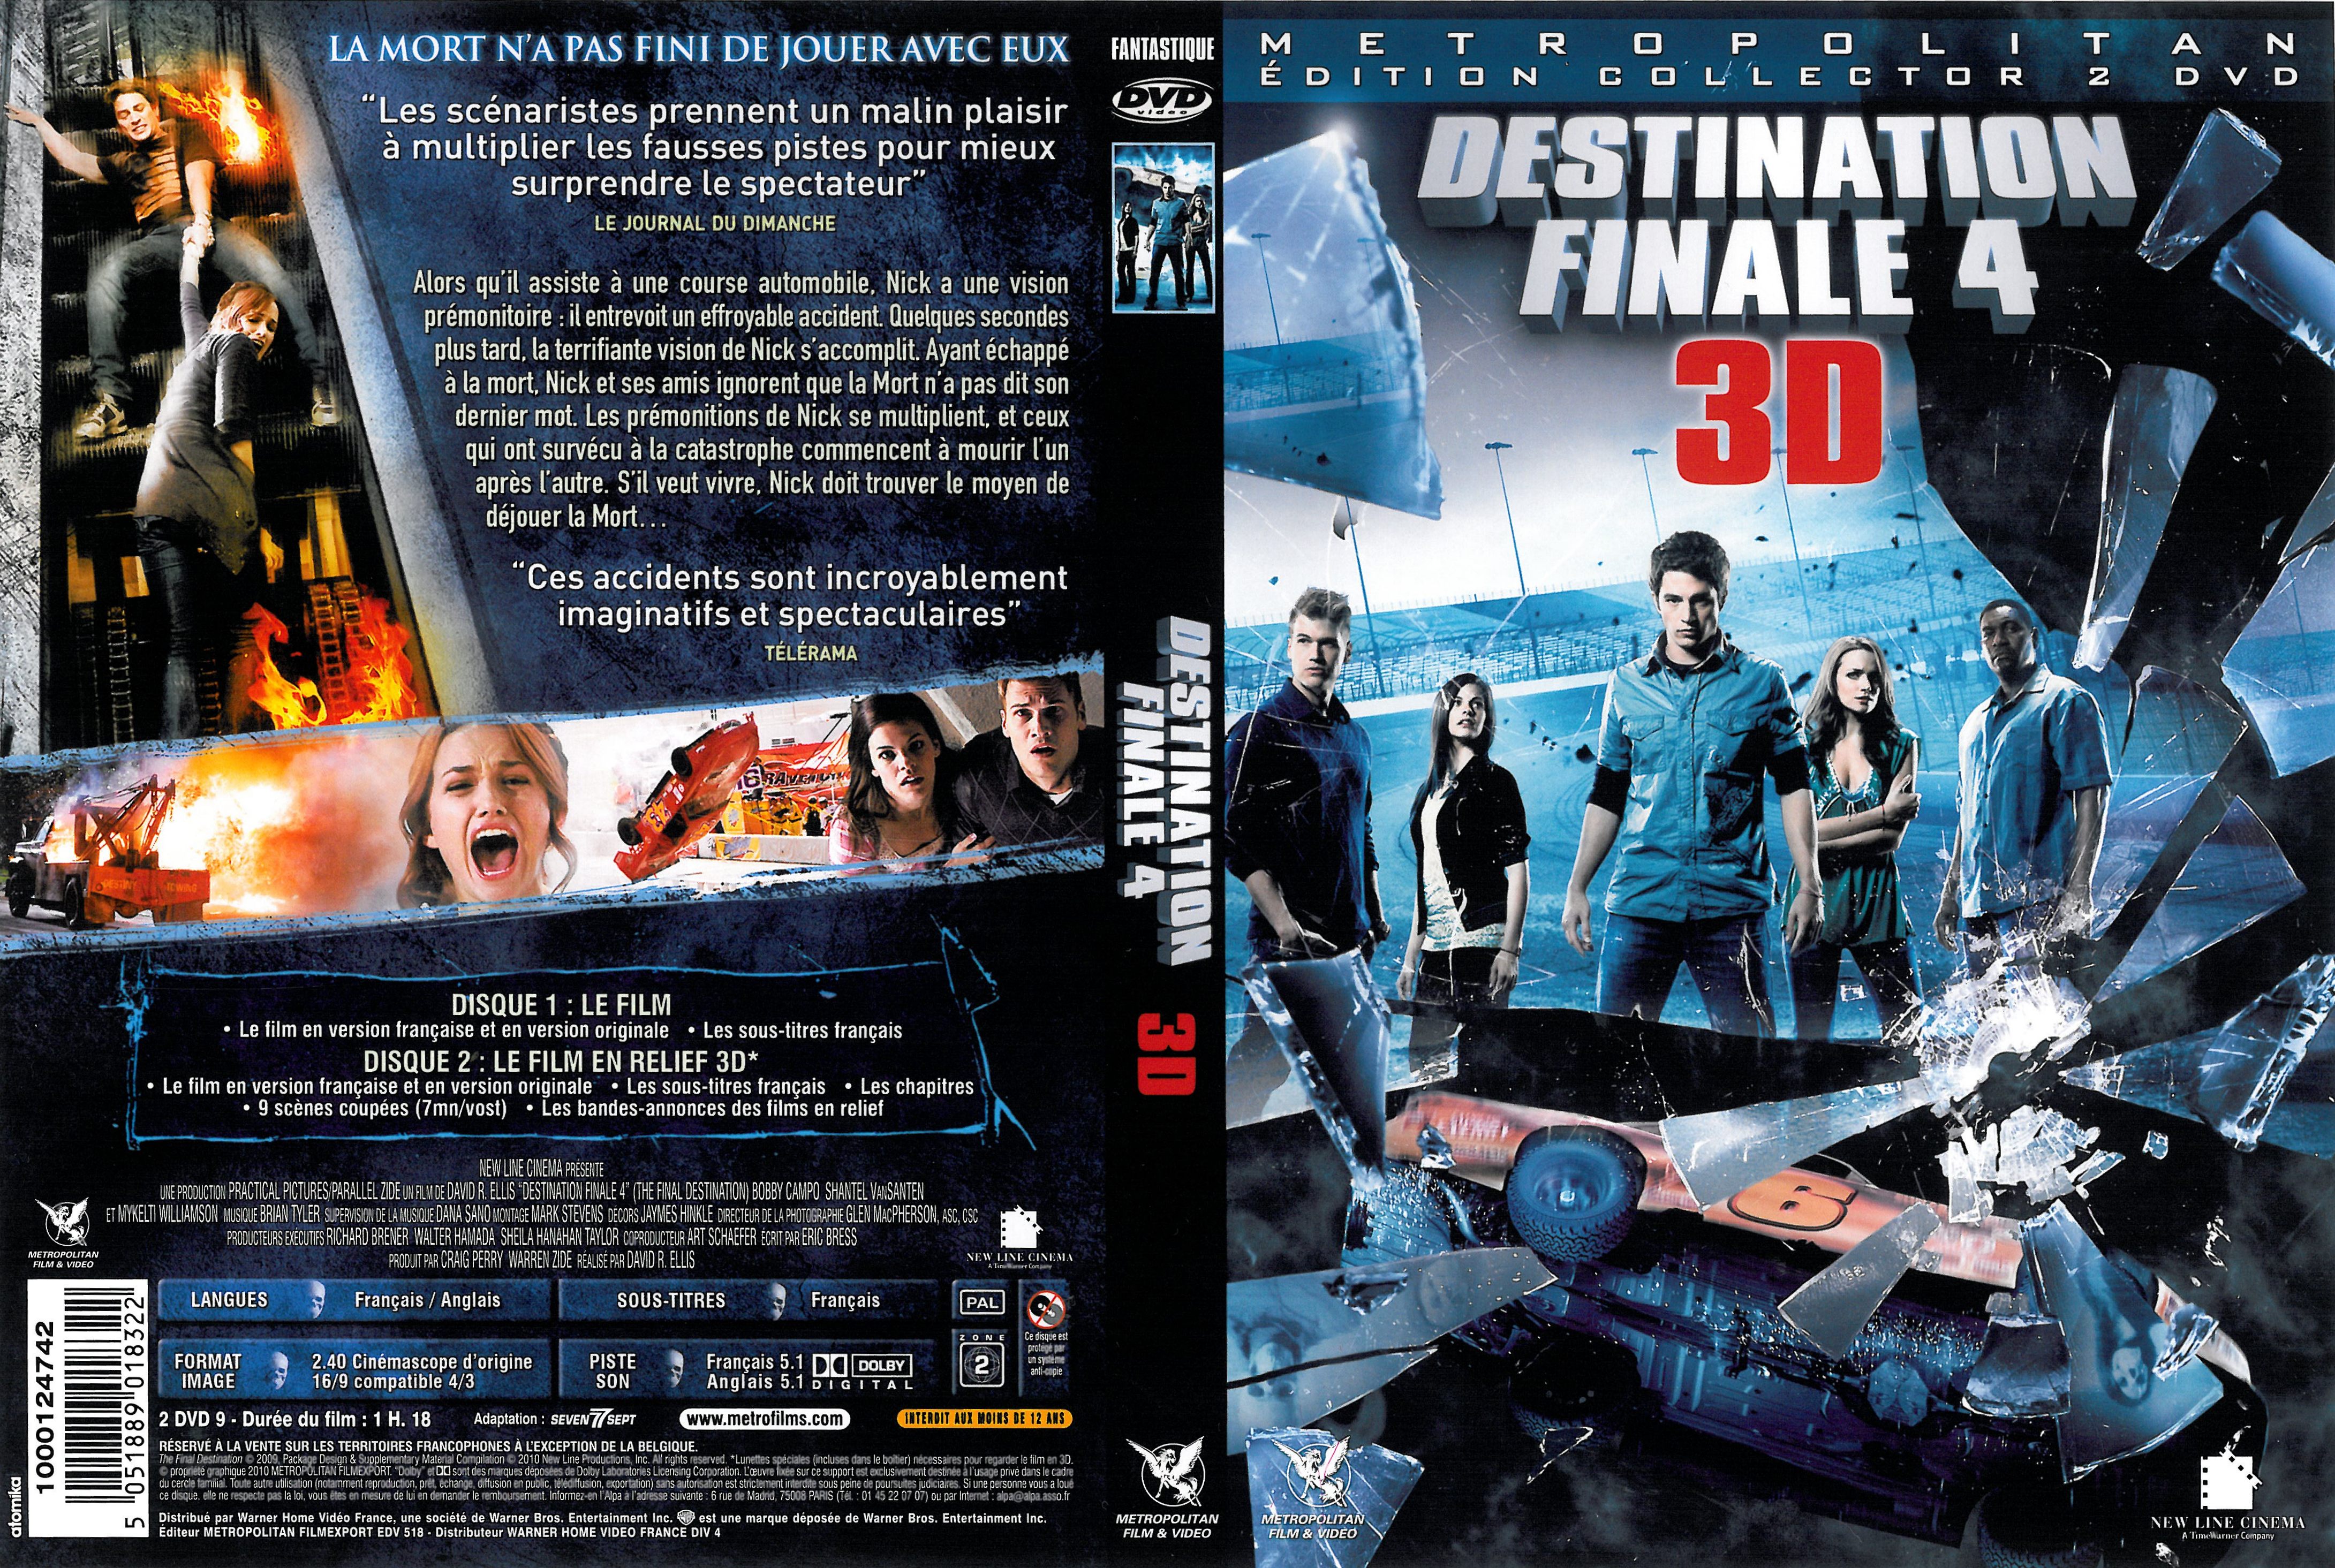 Jaquette DVD Destination finale 4 3D